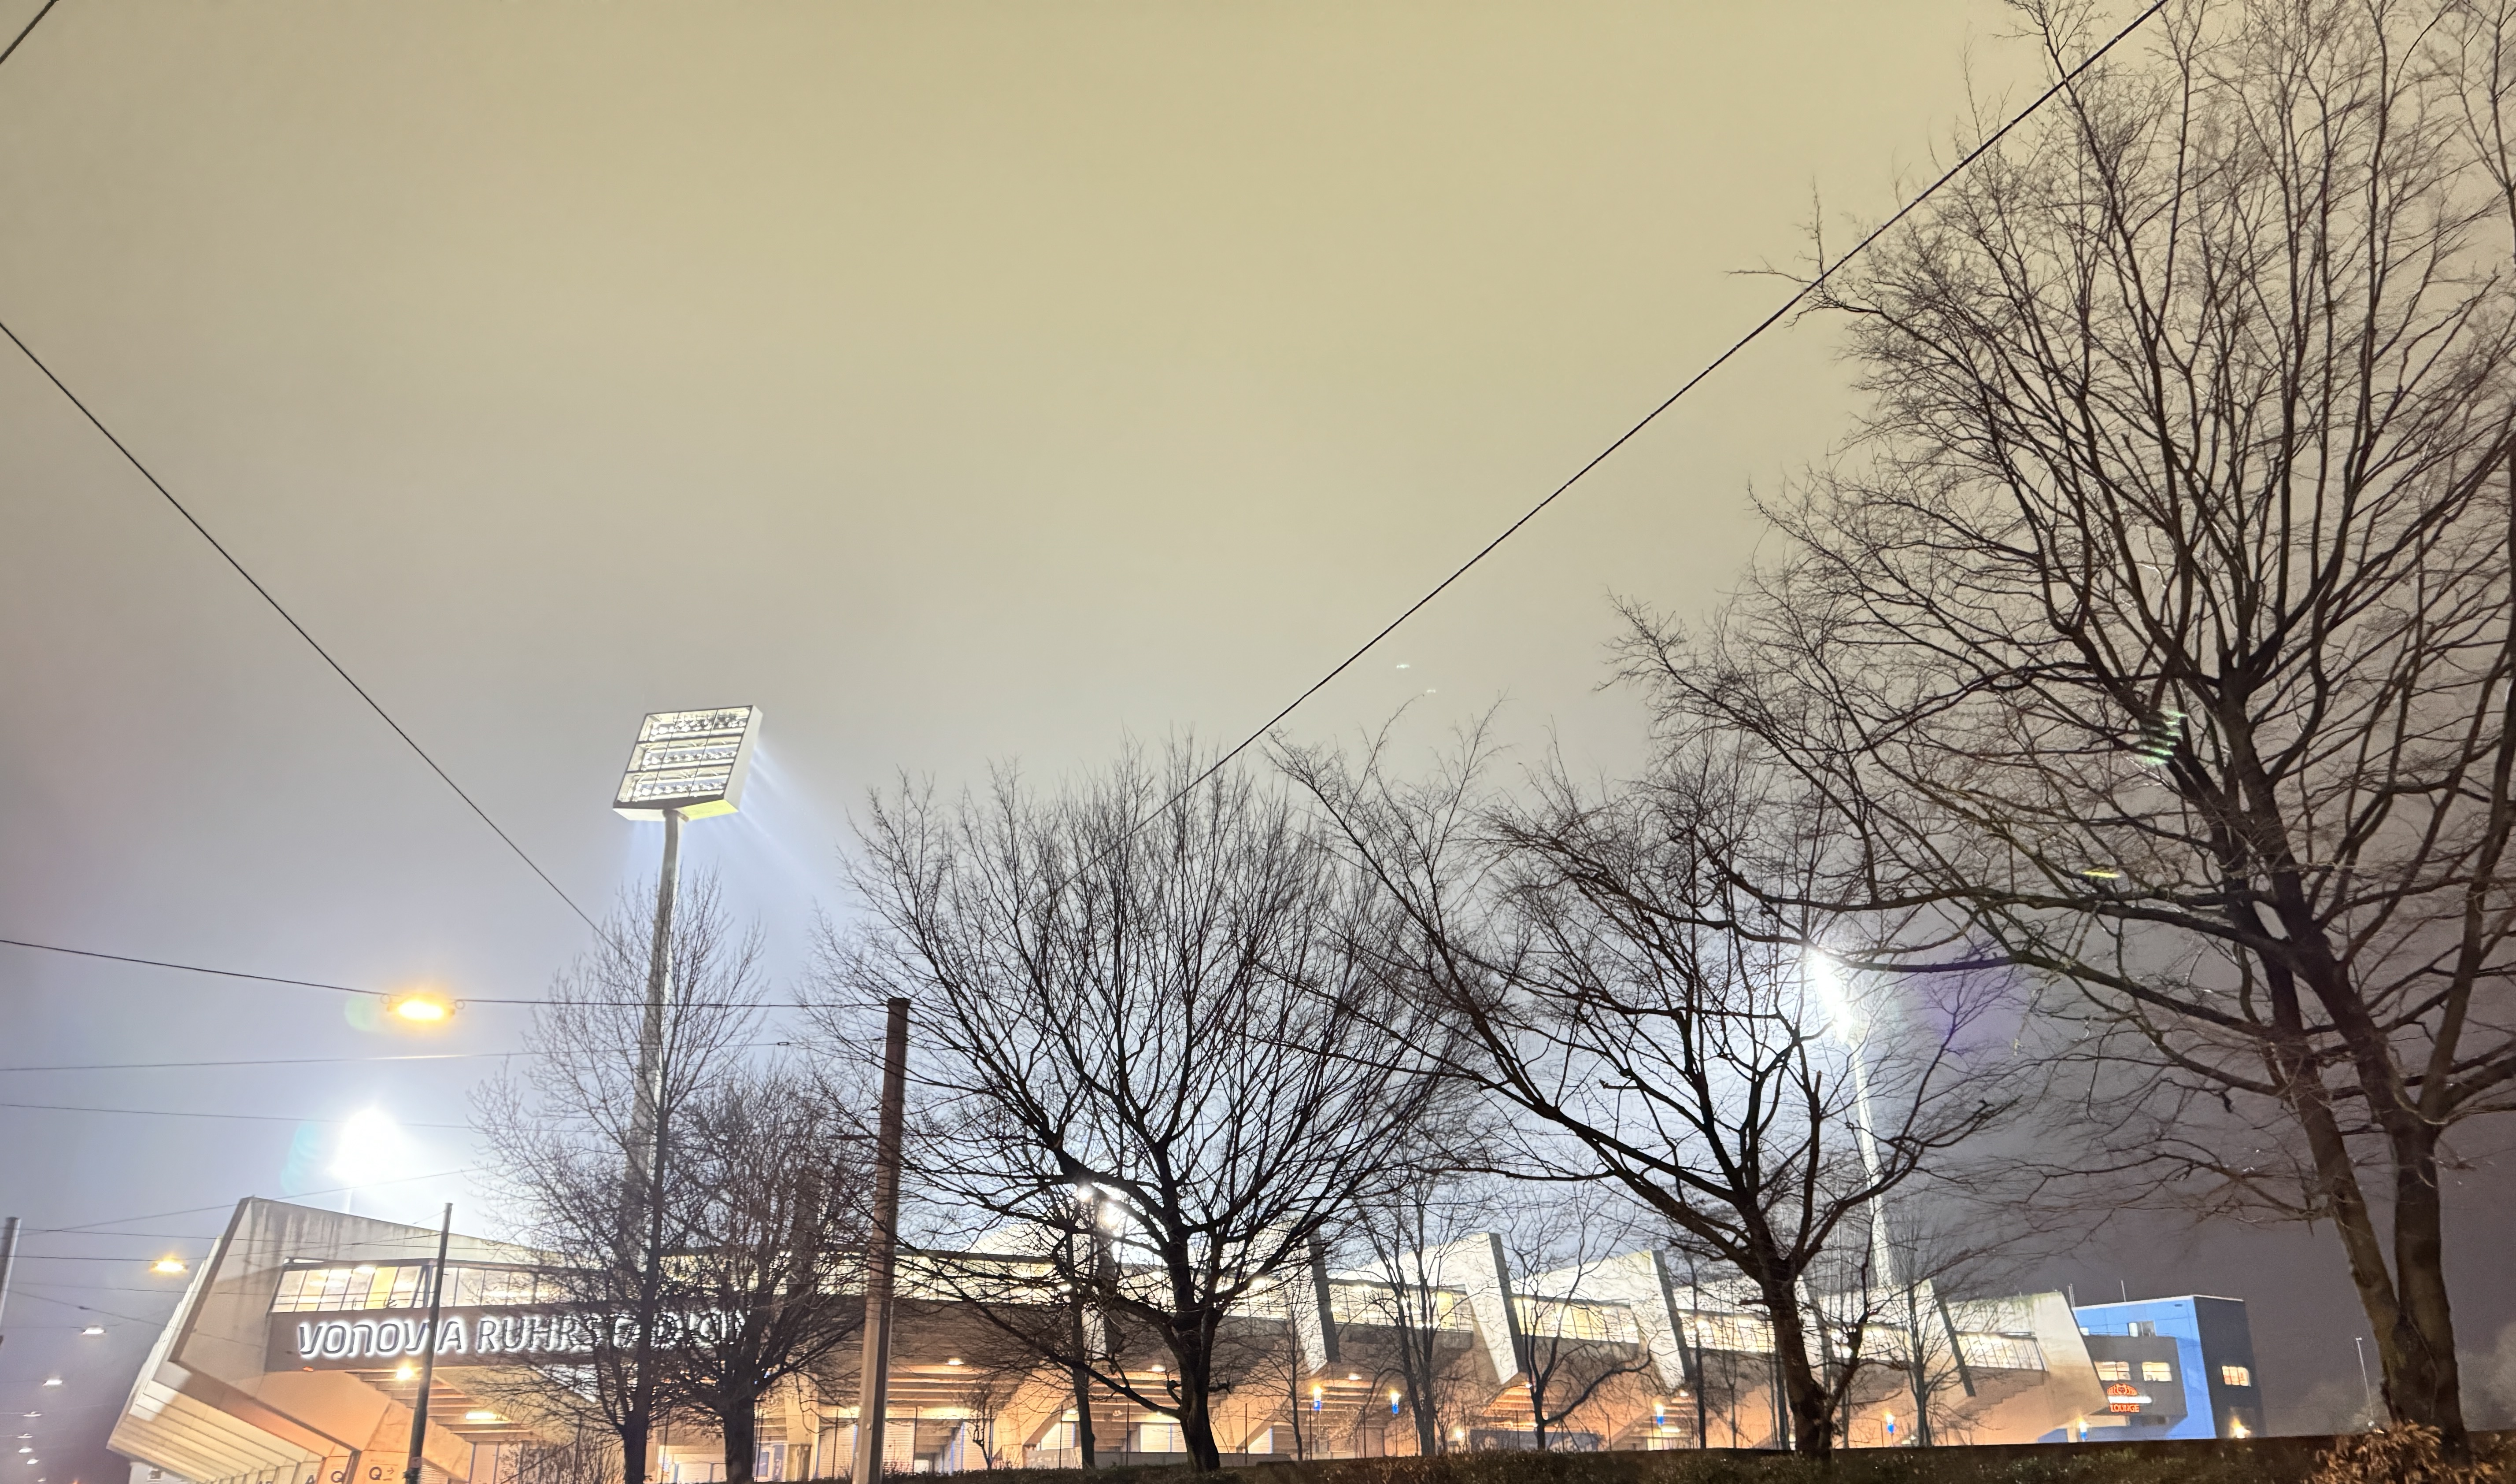 Das Ruhrstadion bei Nacht. Die Flutlichtmasten leuchten